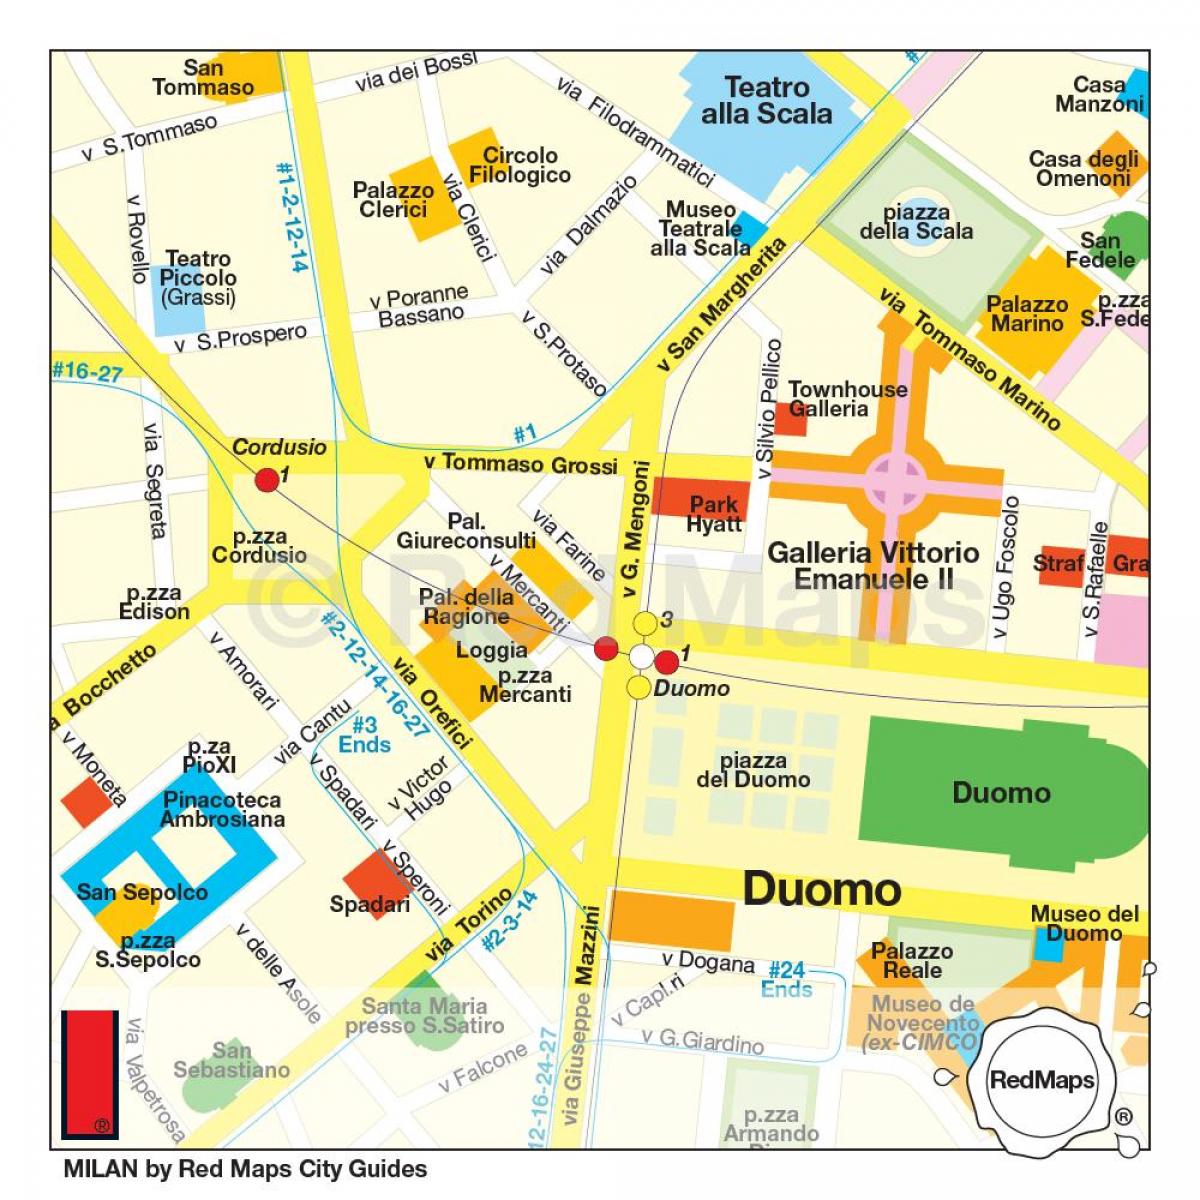 kort over milano shopping gade